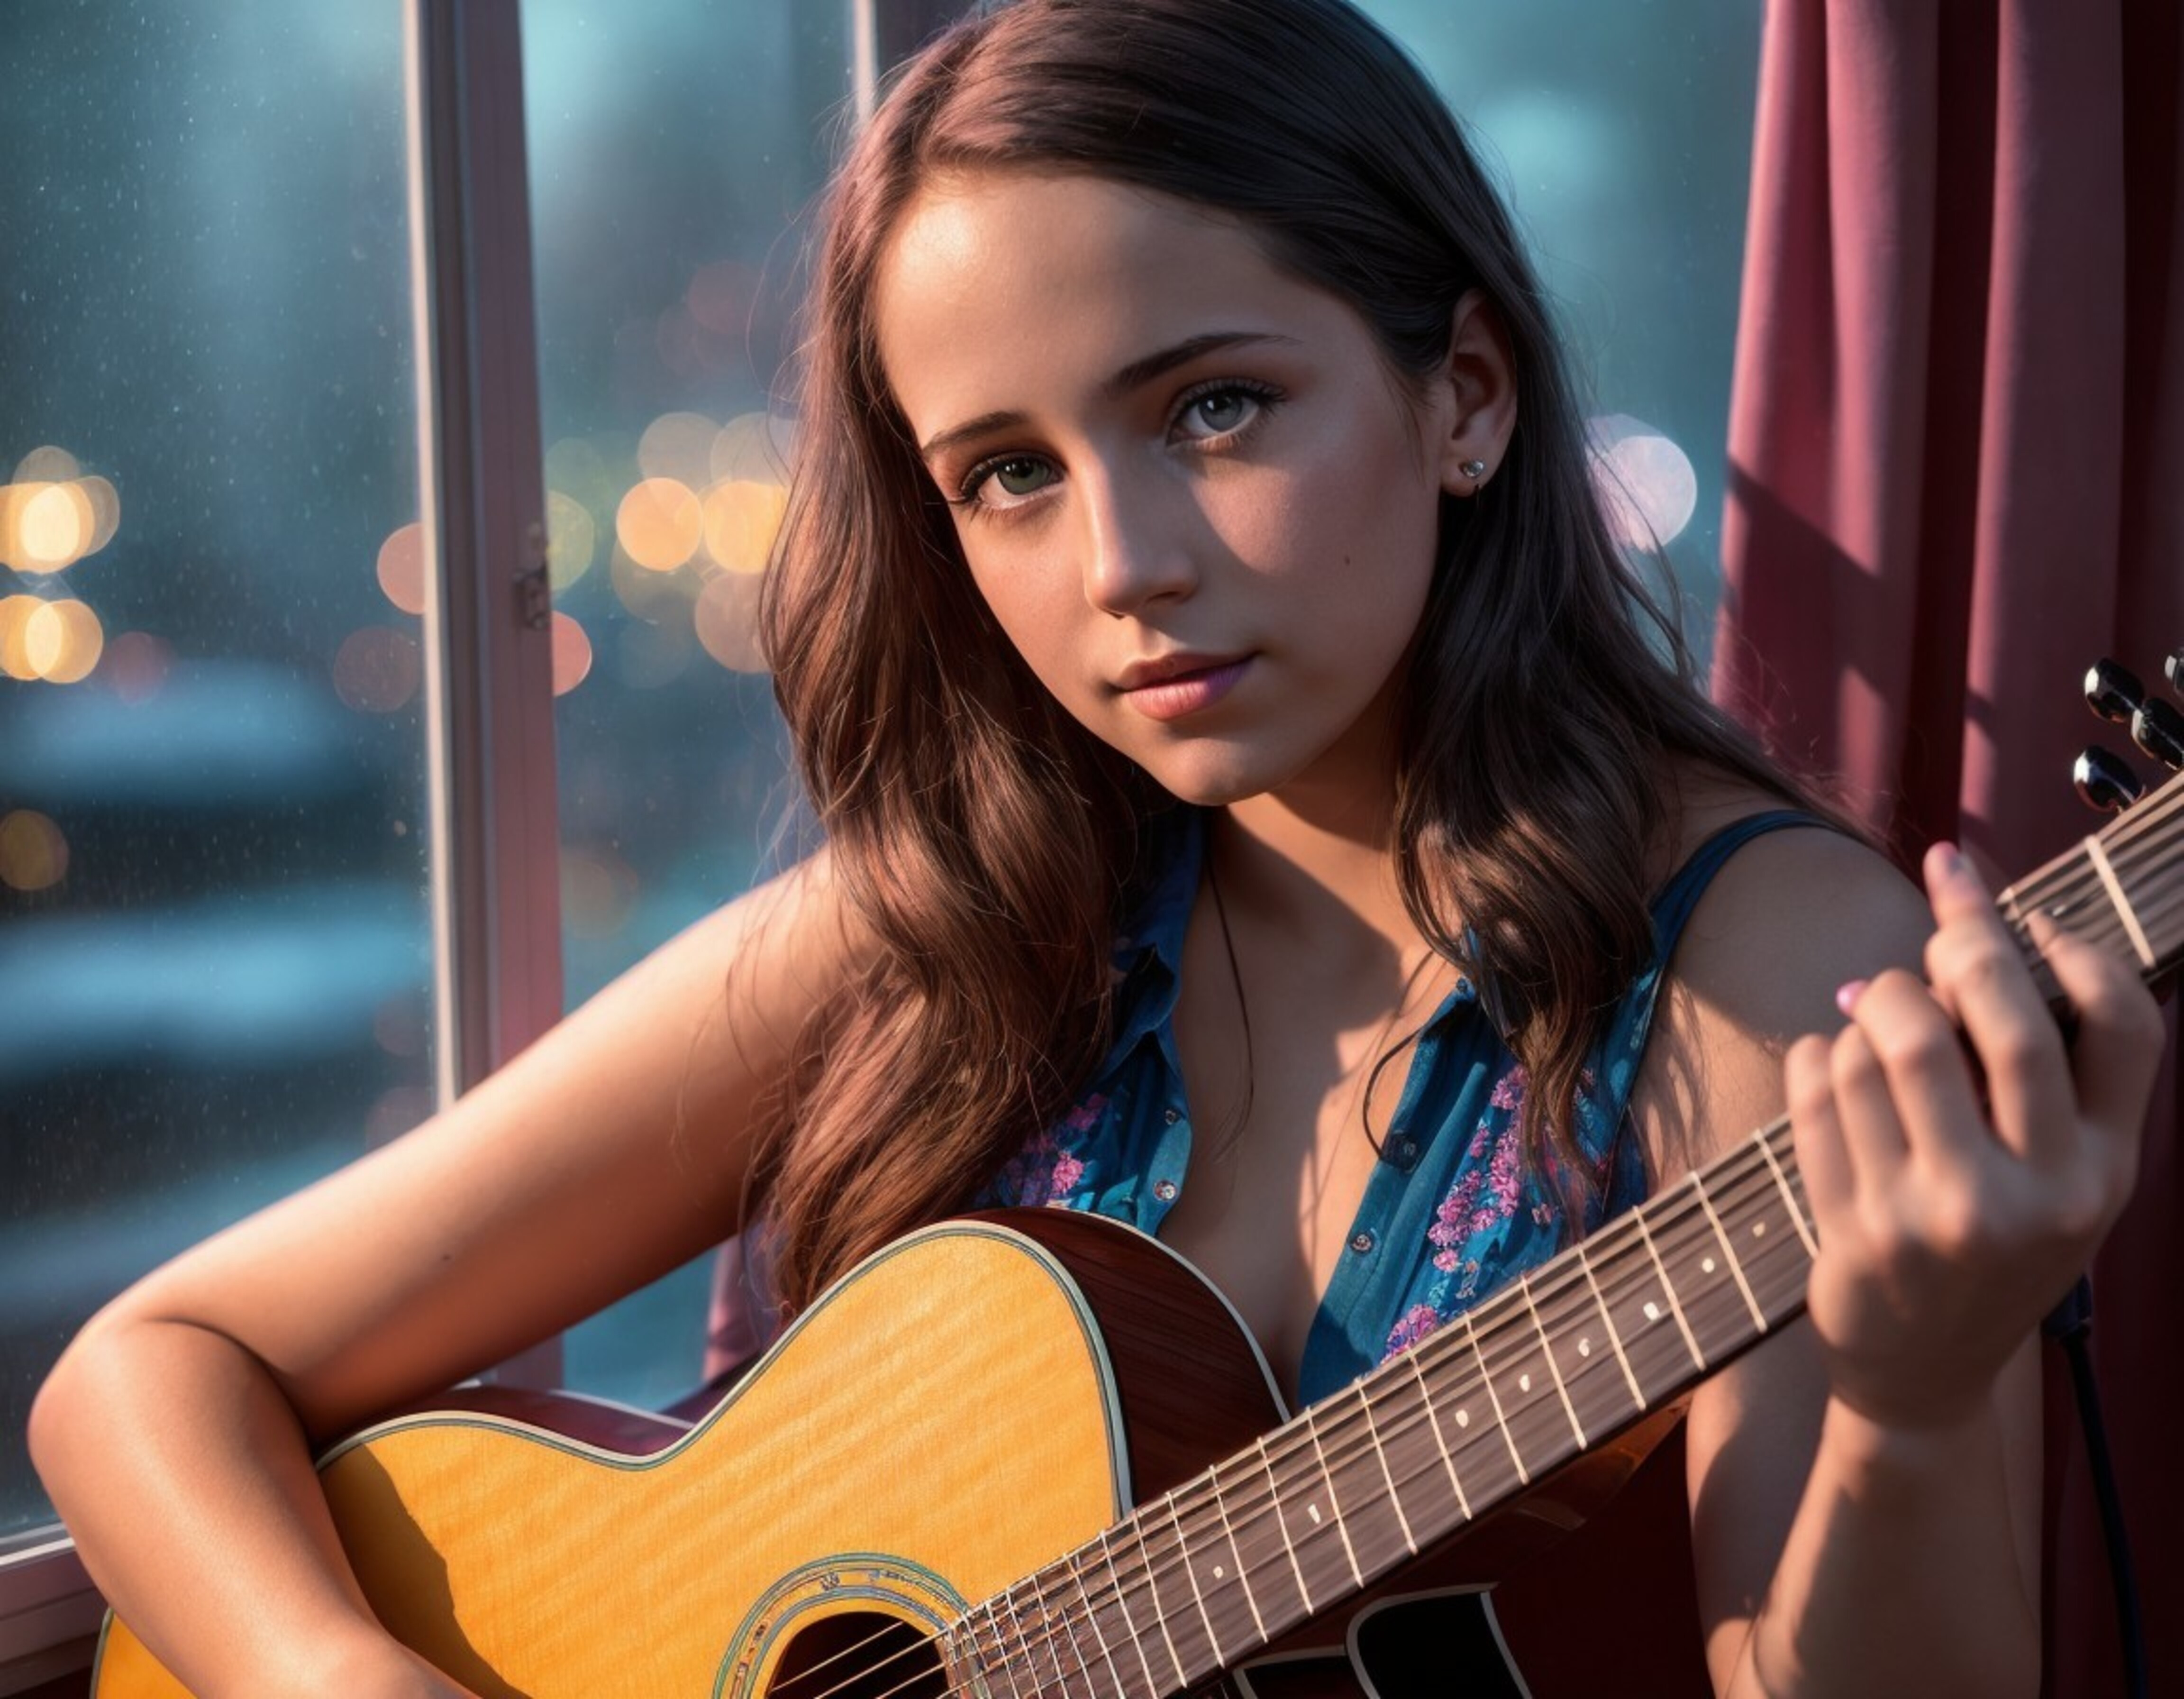 Бесплатное фото Девушка у окна играет на гитаре